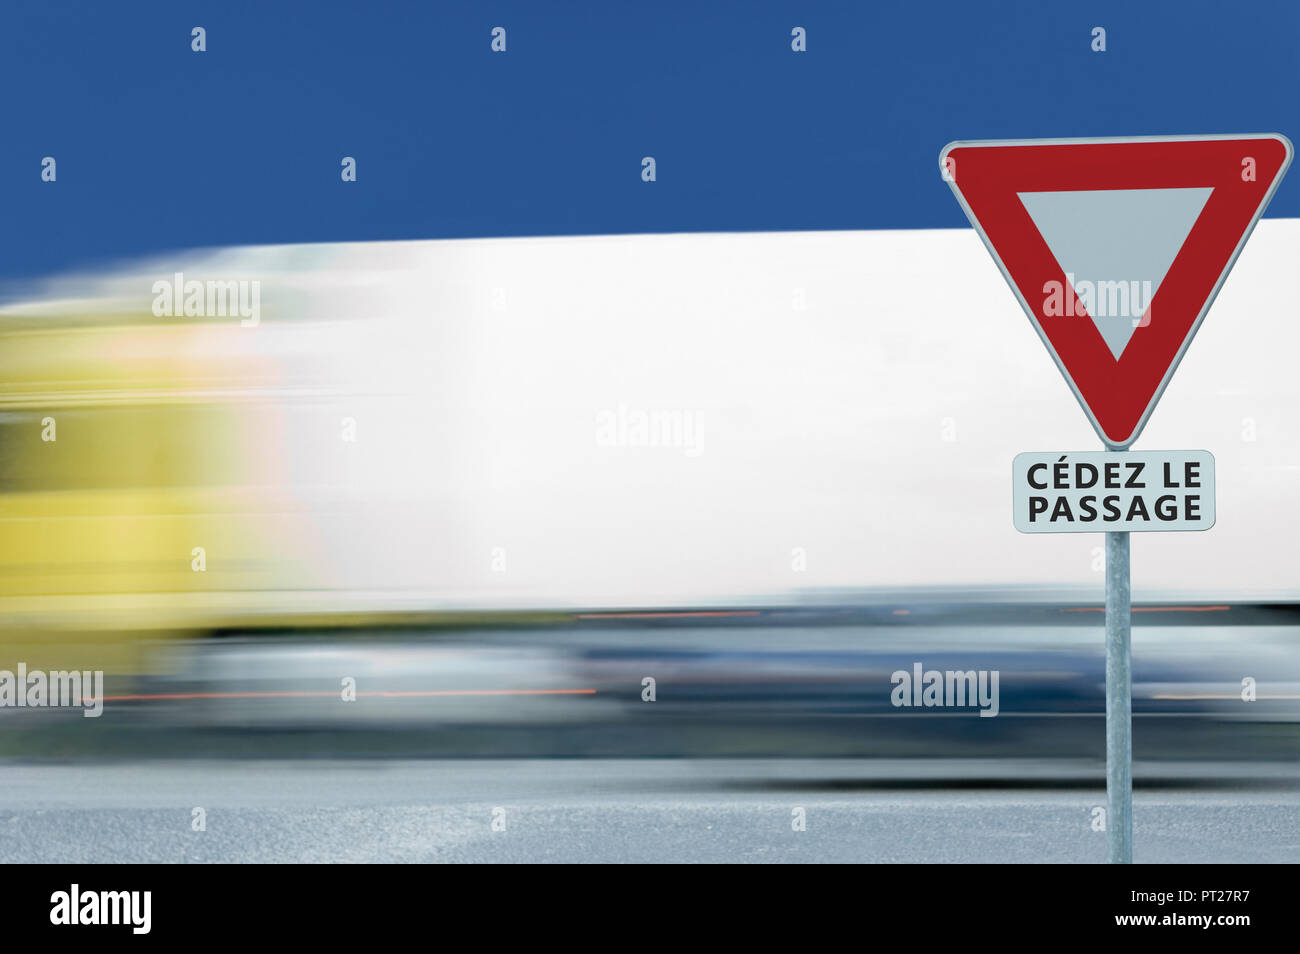 Rendement moyen donner cédez le passage français road sign, motion blurred camion trafic de véhicules, l'arrière-plan blanc triangle signalisation cadre rouge avertissement réglementaire Banque D'Images